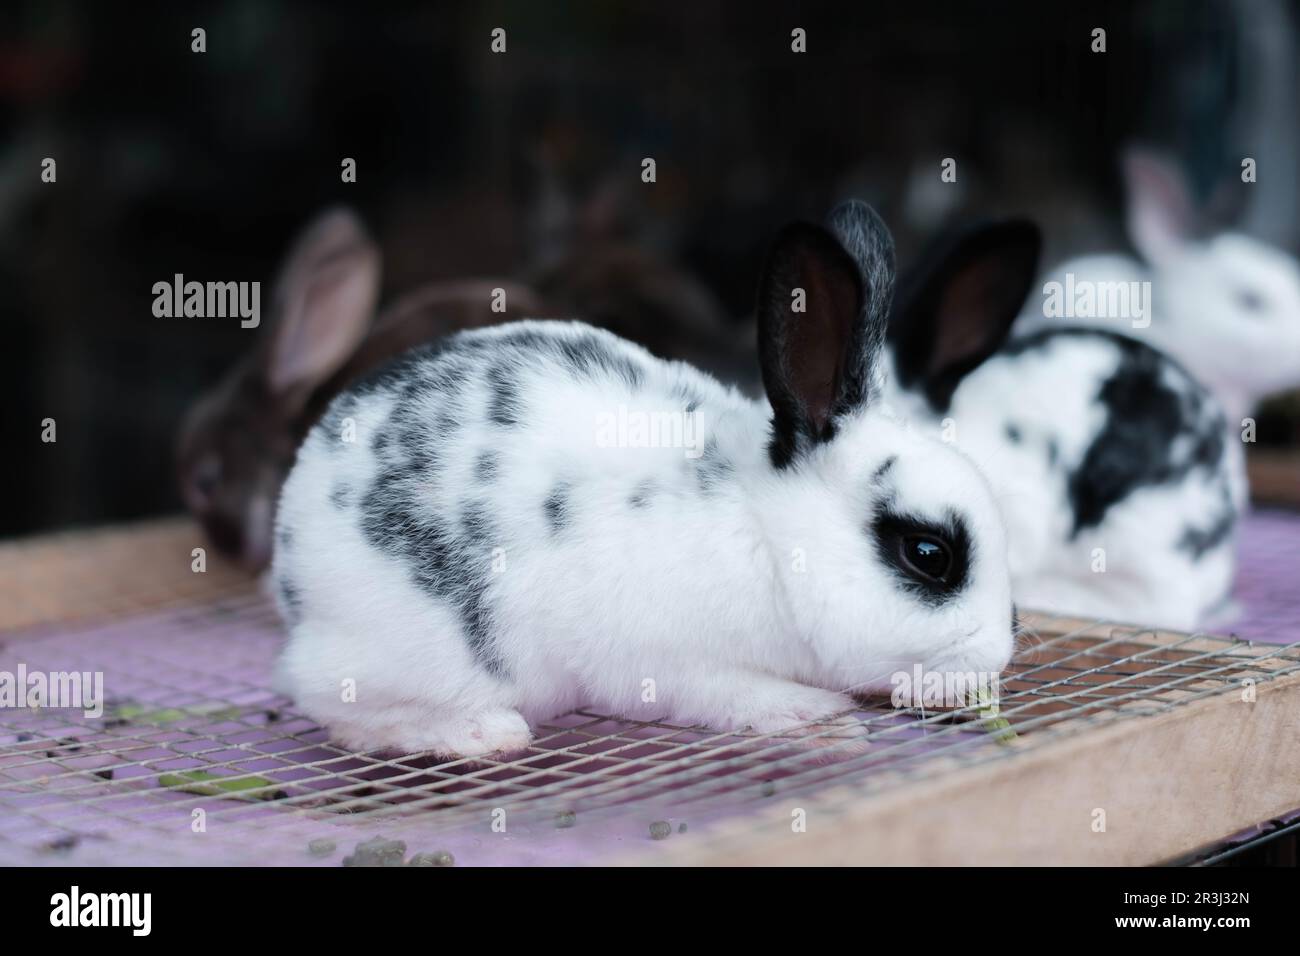 Eine englische Kaninchenrasse mit Bokeh oder verschwommenem Hintergrund auf dem Käfig platziert Stockfoto